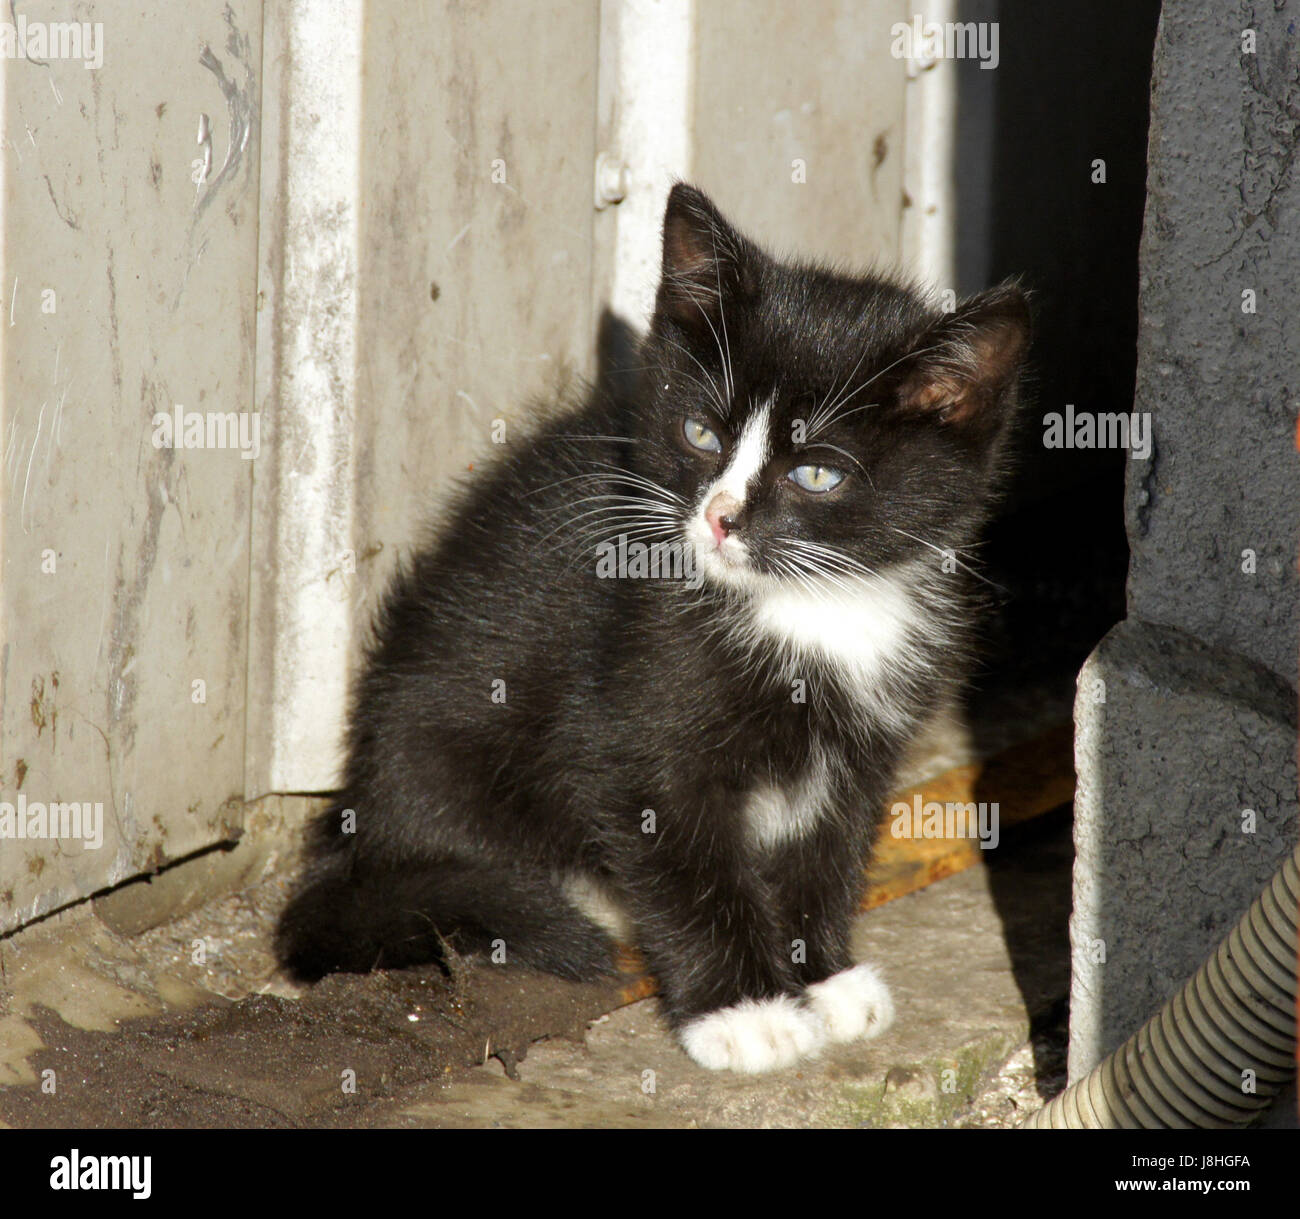 Katze Baby, Kätzchen, gemeinsame, nützlich, flauschig, Geschwindigkeit,  Geschwindigkeit, Lobhudelei, Konjunktion Stockfotografie - Alamy